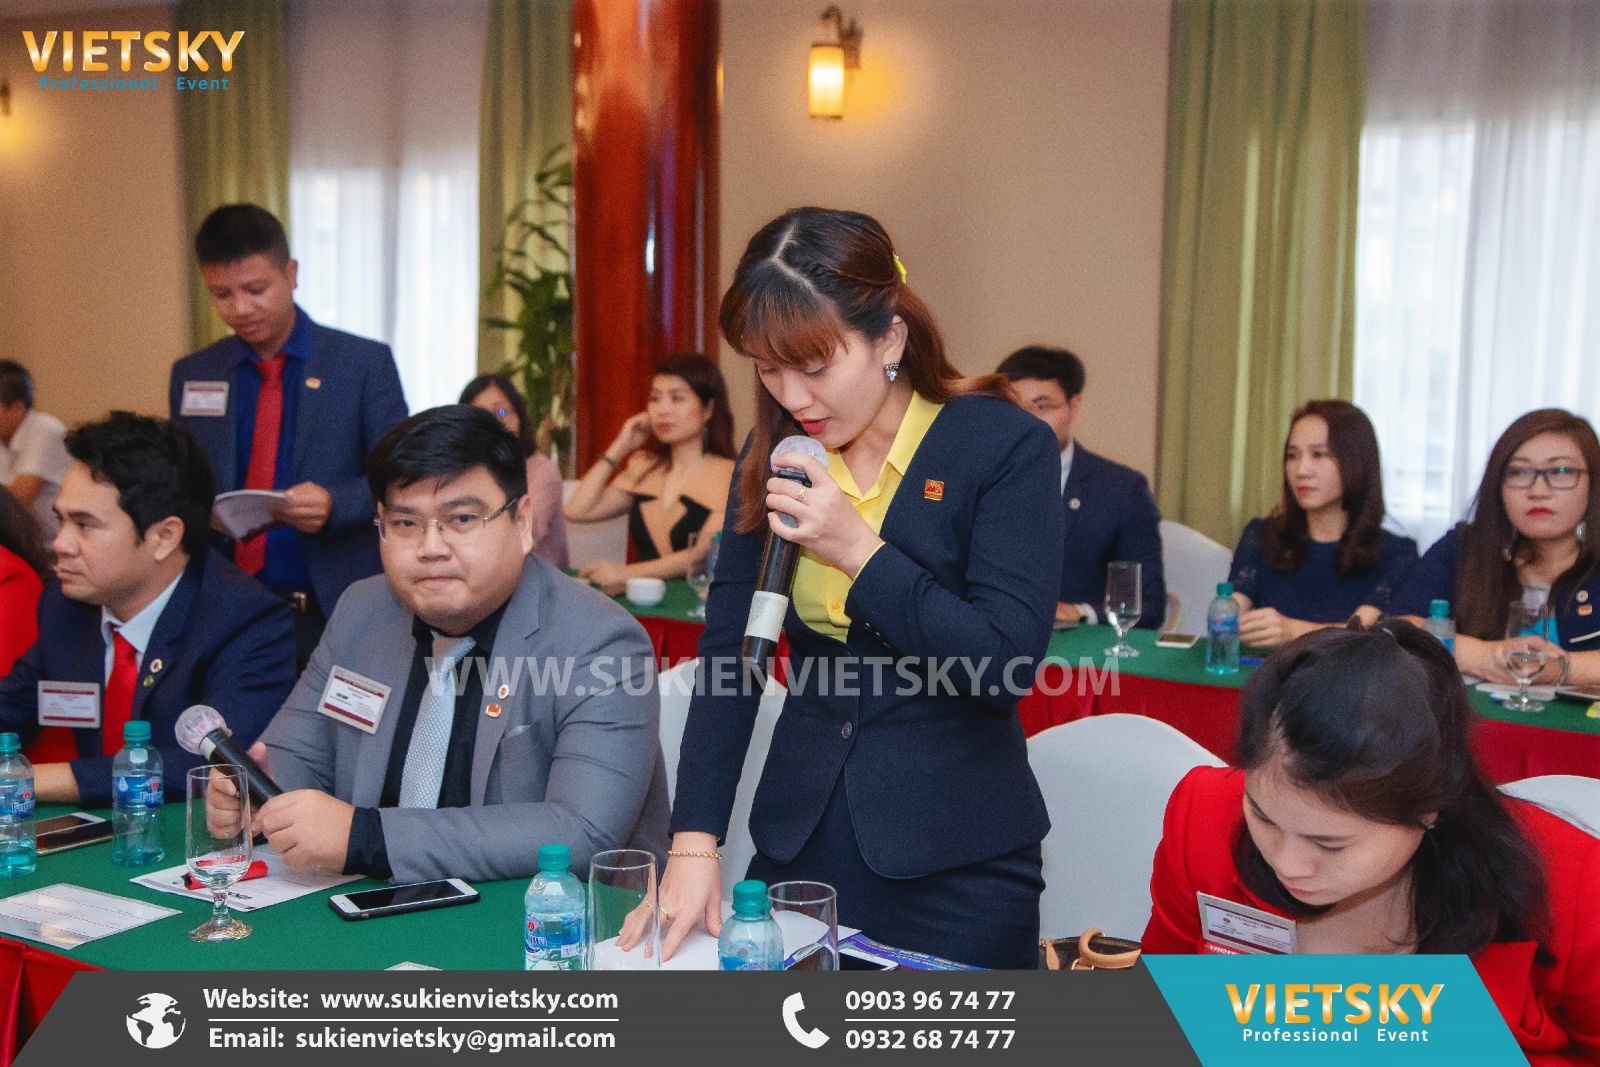 Công Ty Tổ Chức Sự Kiện VietSky I Nhà Tổ Chức Sự Kiện Chuyên Nghiệp Tại HCM, Hà Nội